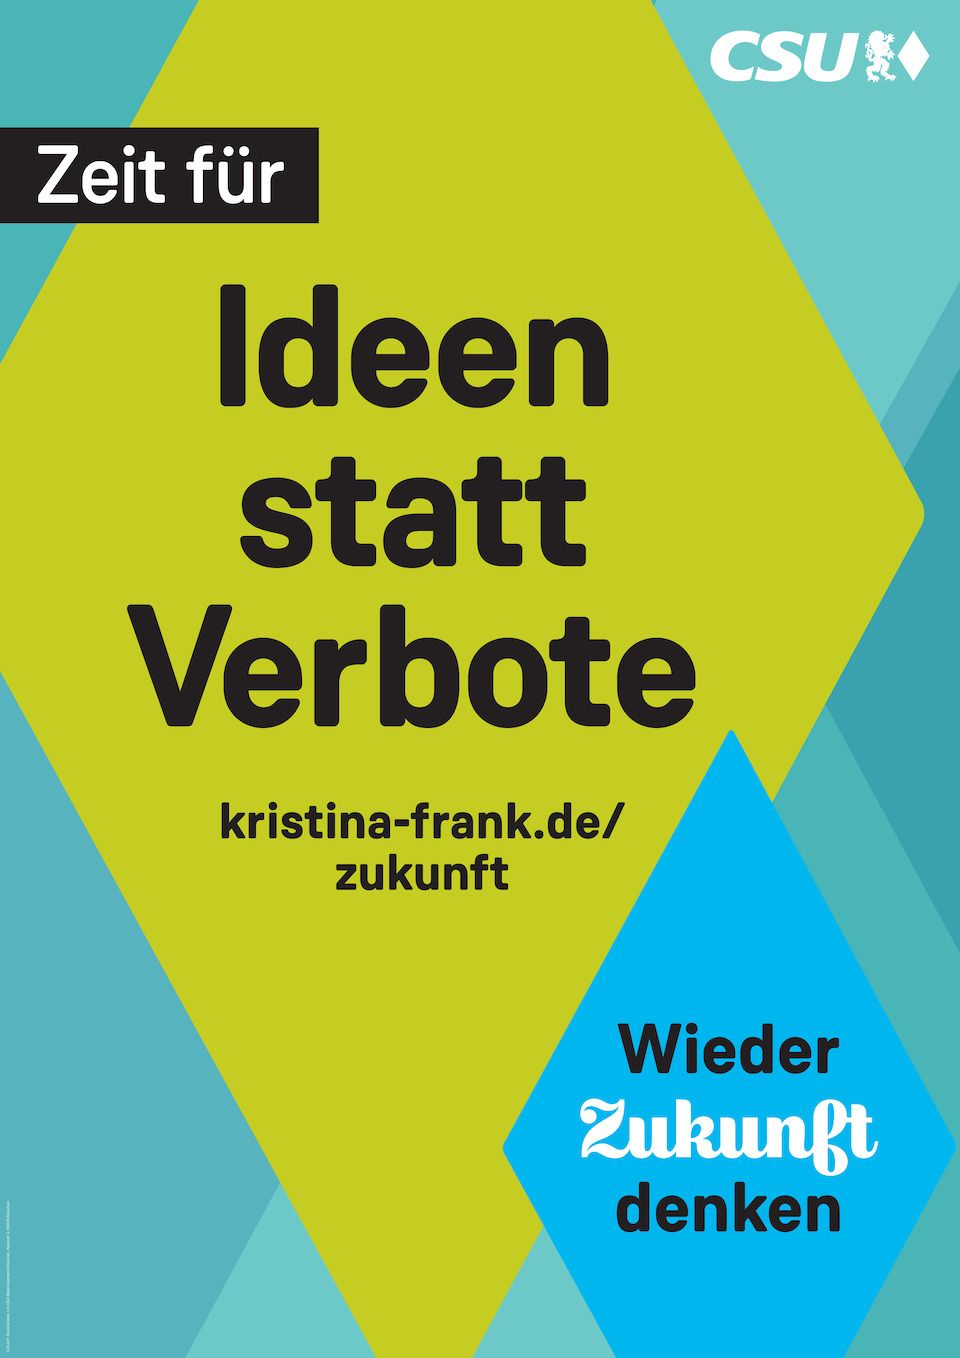 Wahlplakat Kristina Frank - Zeit für Ideen statt Verbote